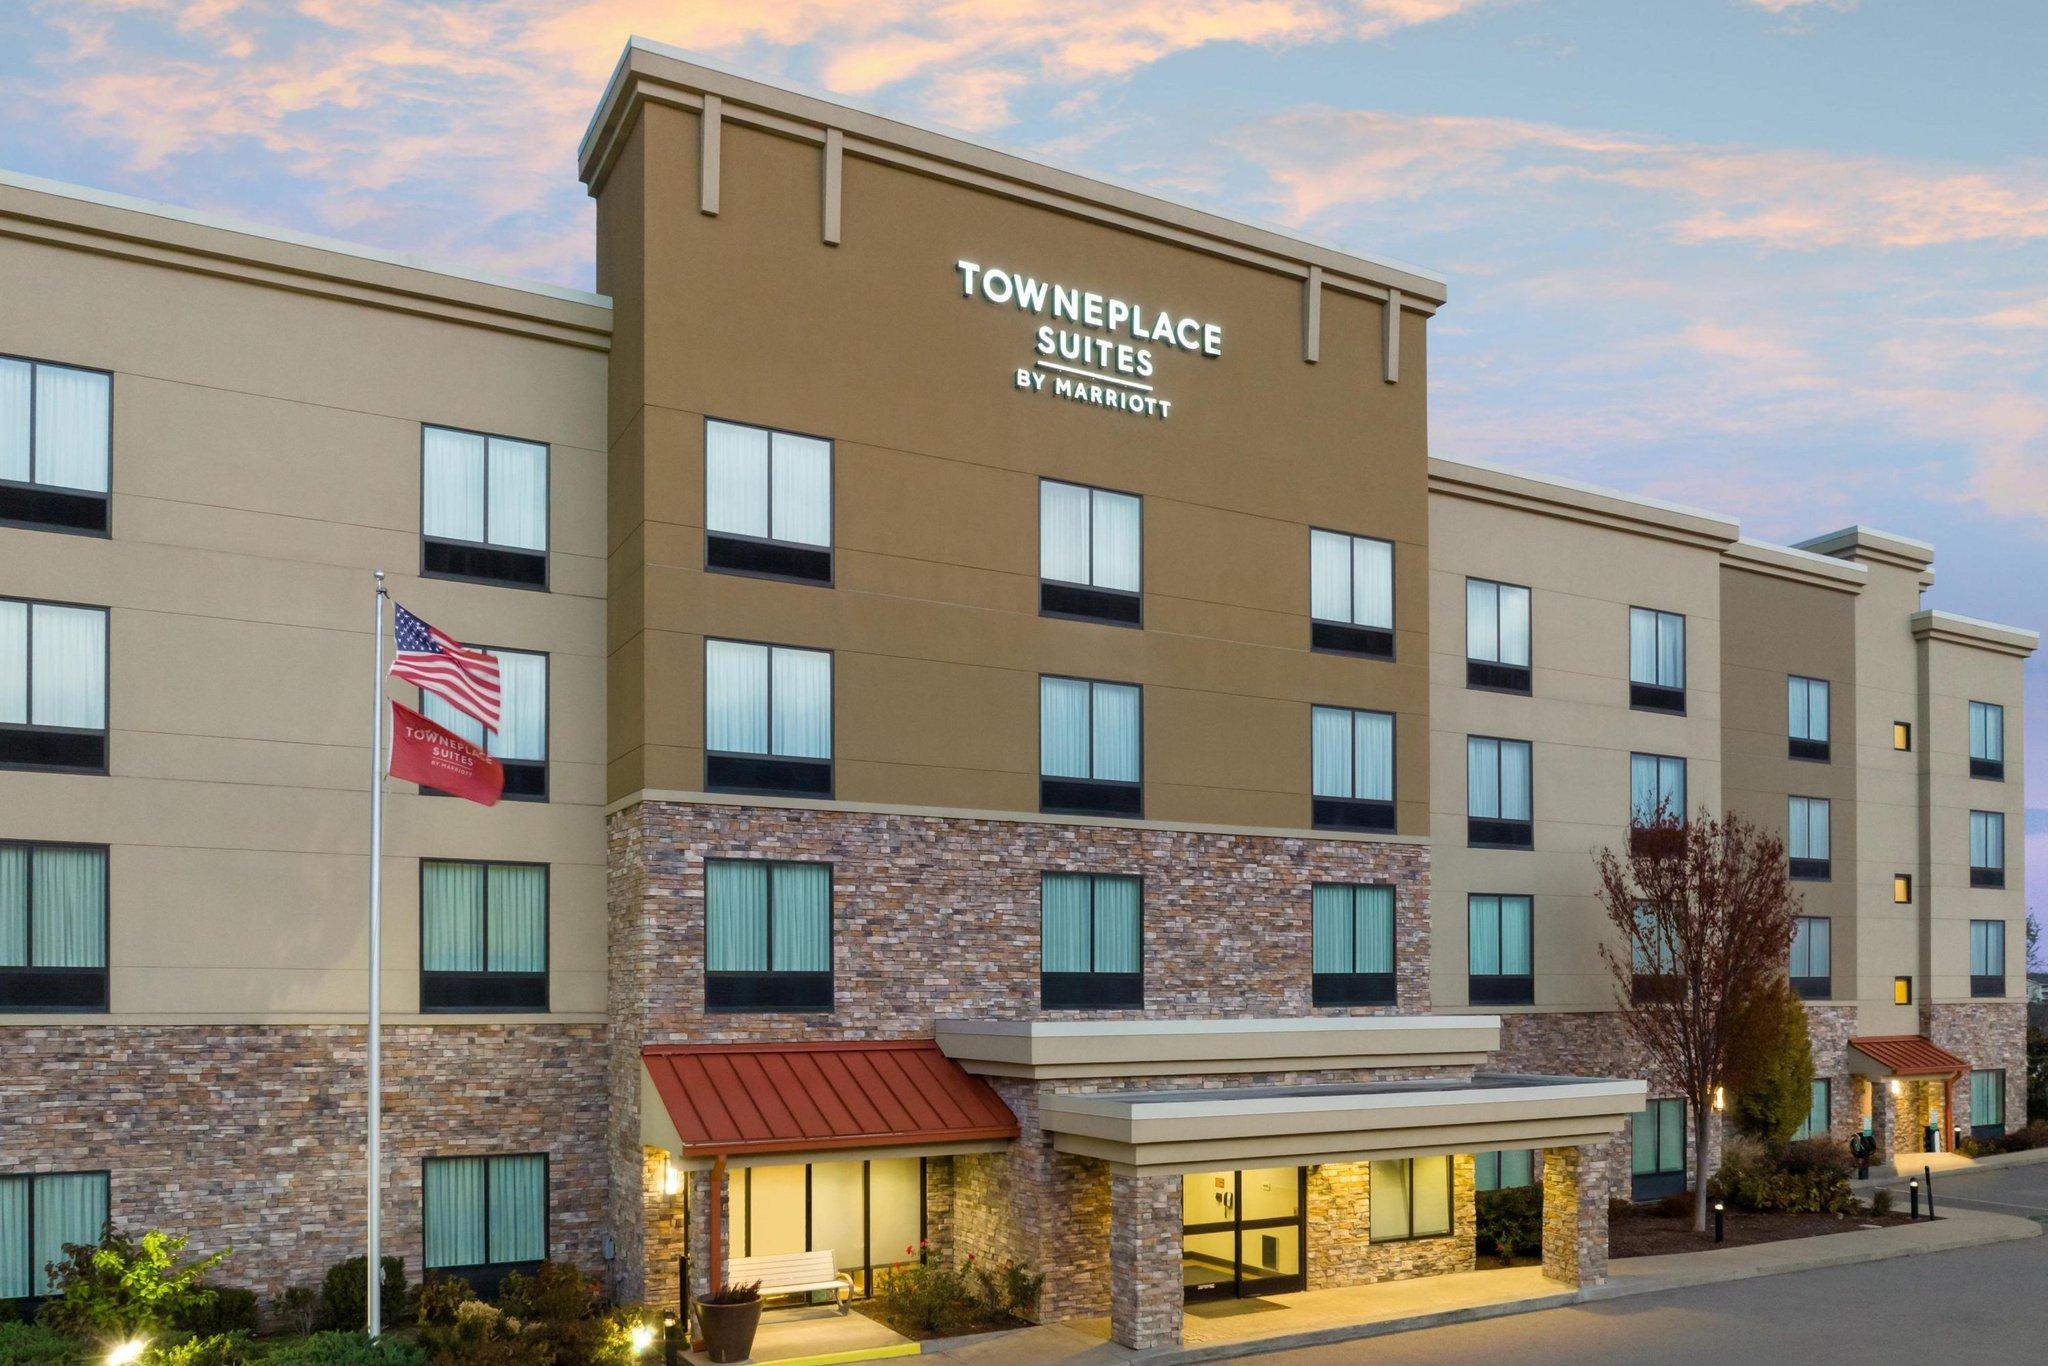 TownePlace Suites Nashville Smyrna in Smyrna, TN